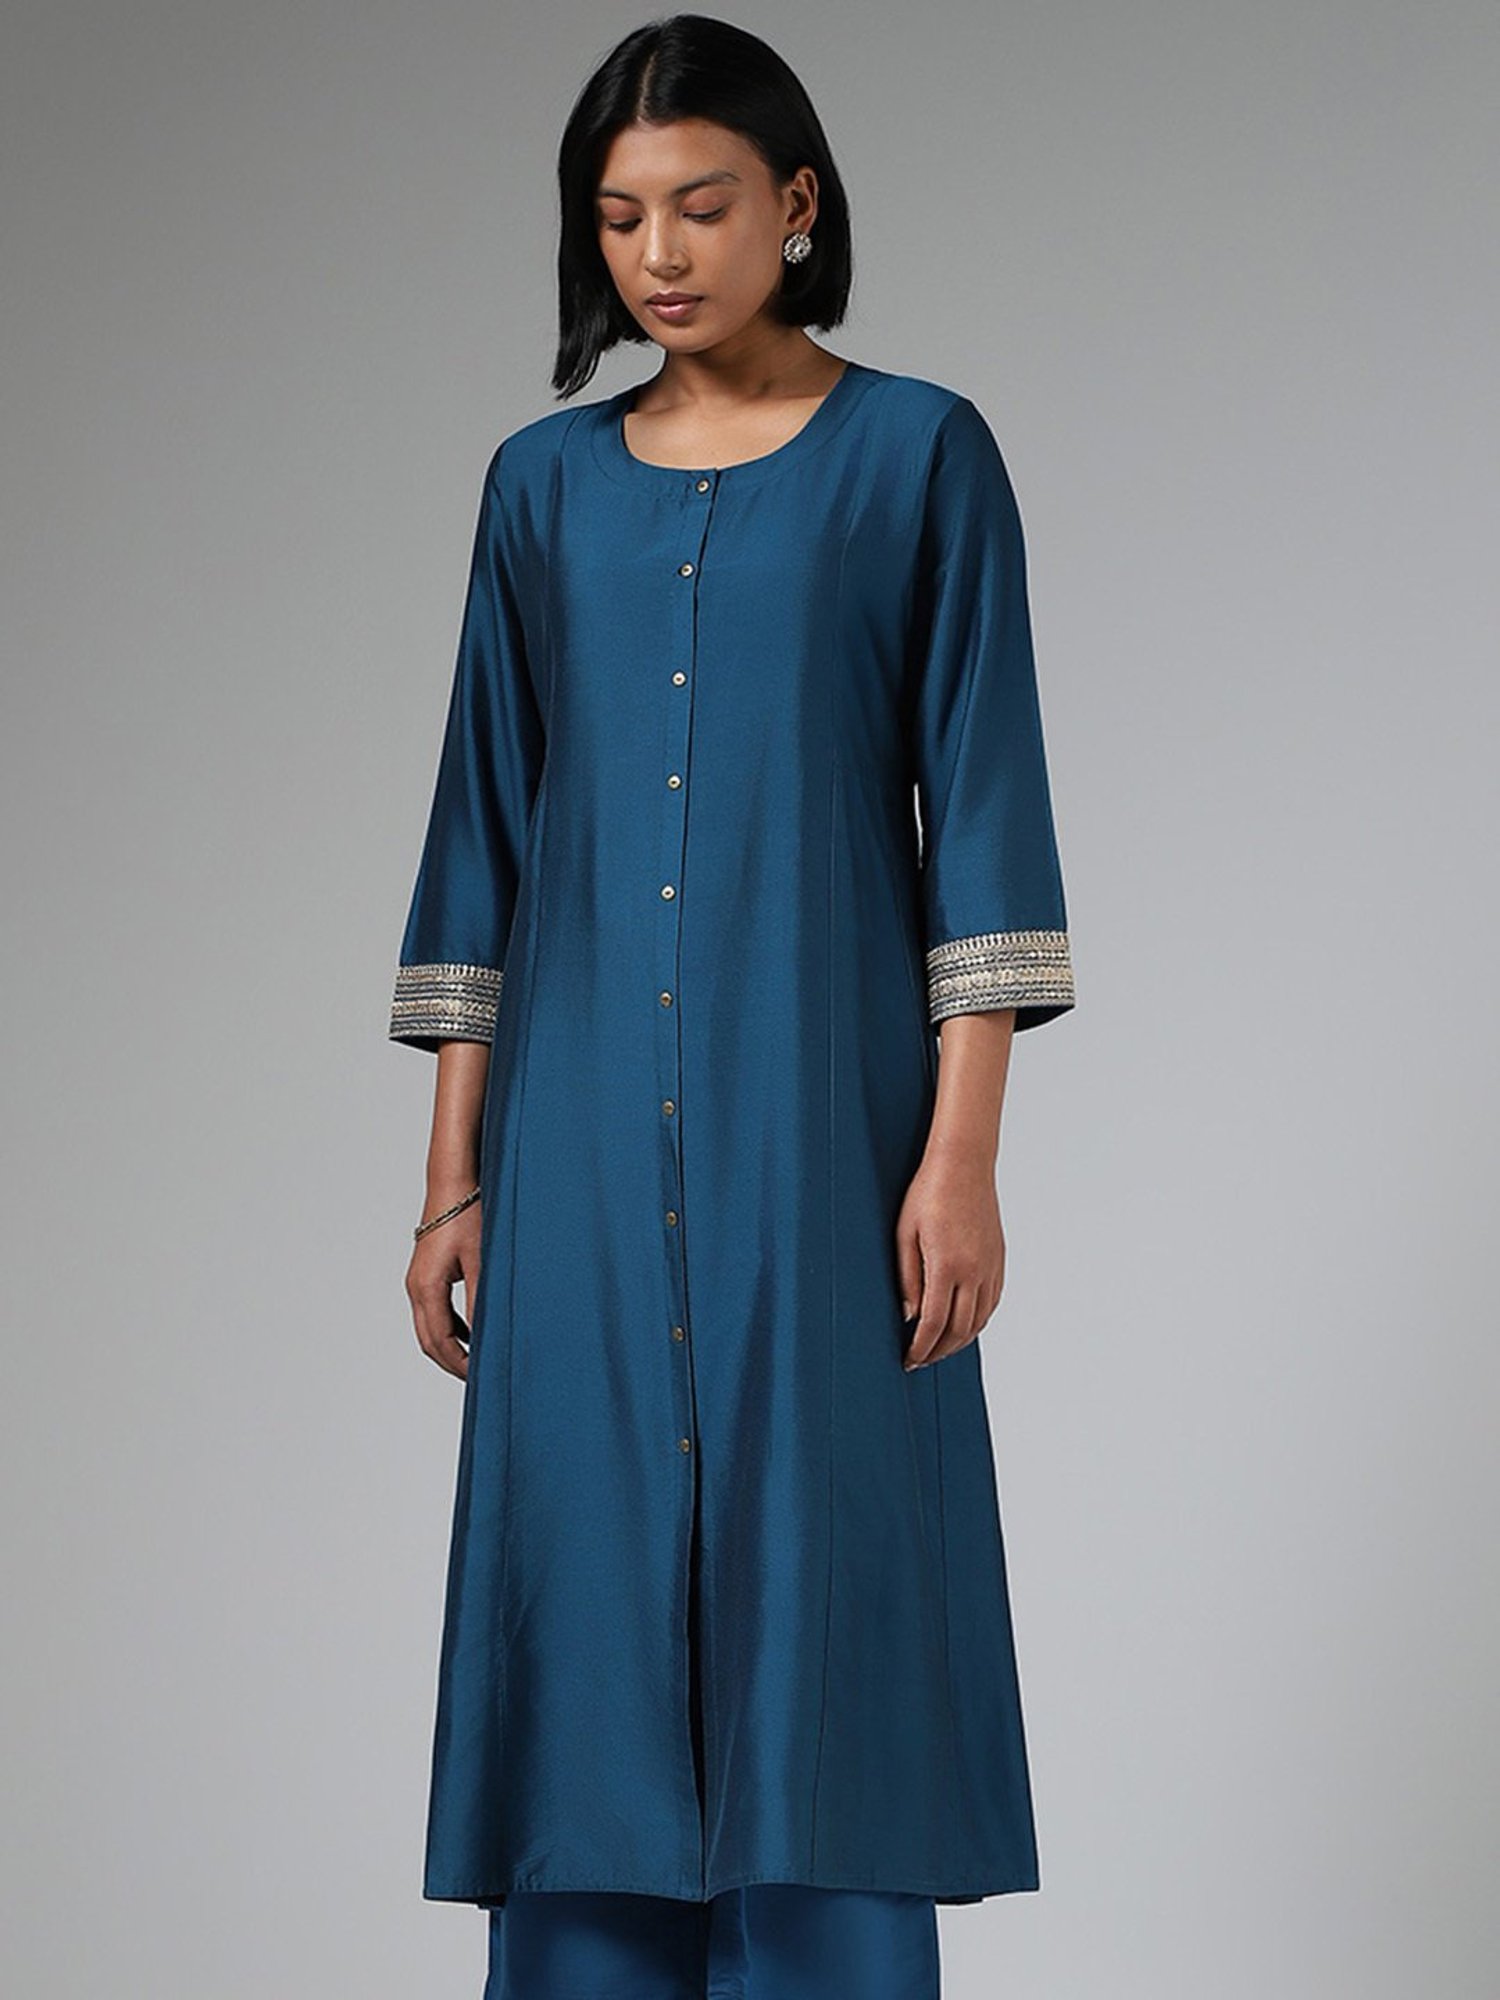 Utsa by Westside Blue Pure Cotton Kurta | Dress patterns, Indian fashion,  Fashion online